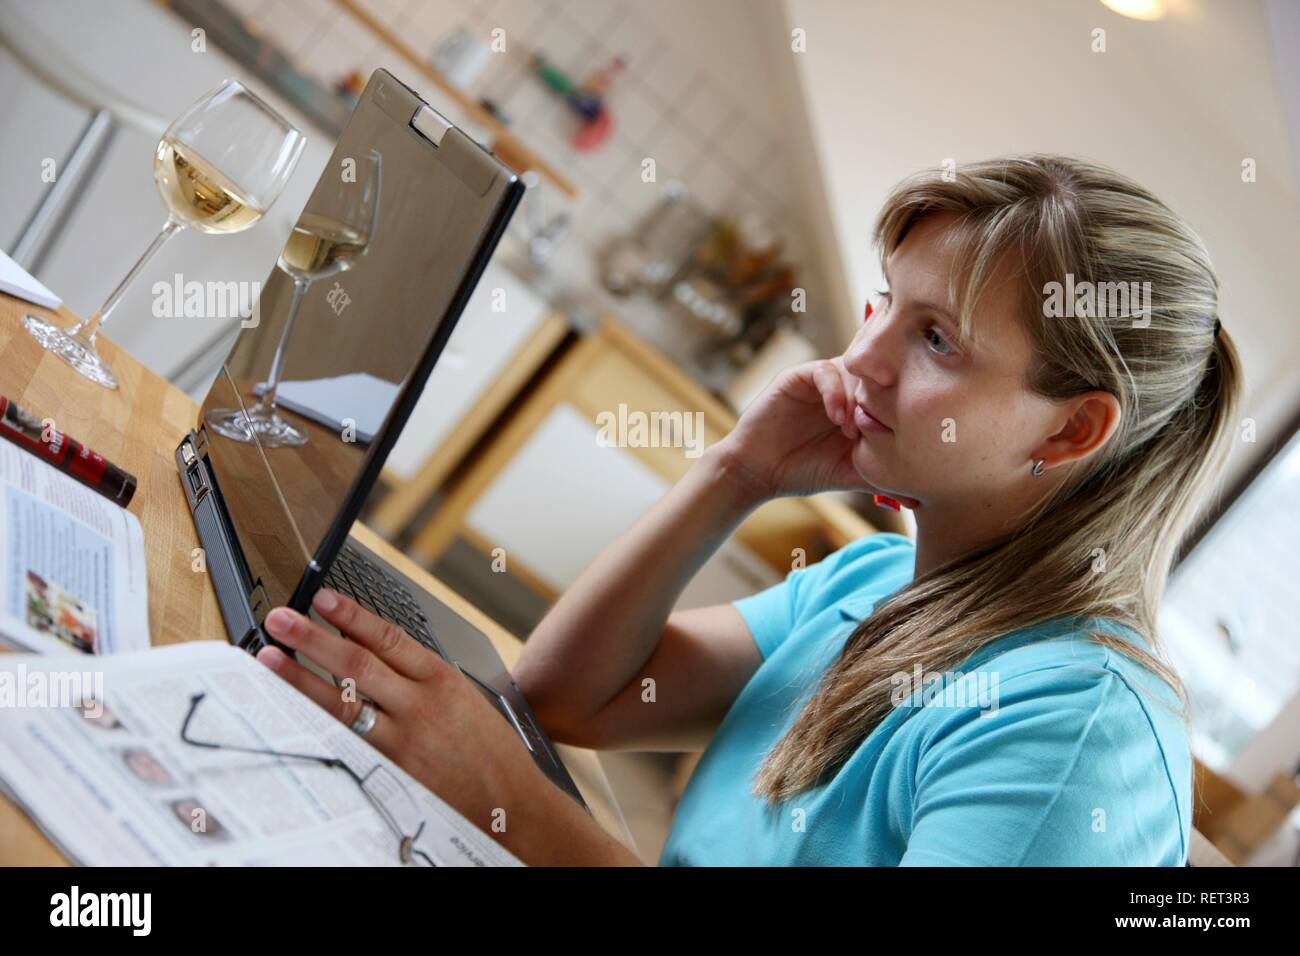 Jeune femme, de 25 à 30 ans, la navigation sur internet avec un ordinateur portable à sa table de cuisine Banque D'Images